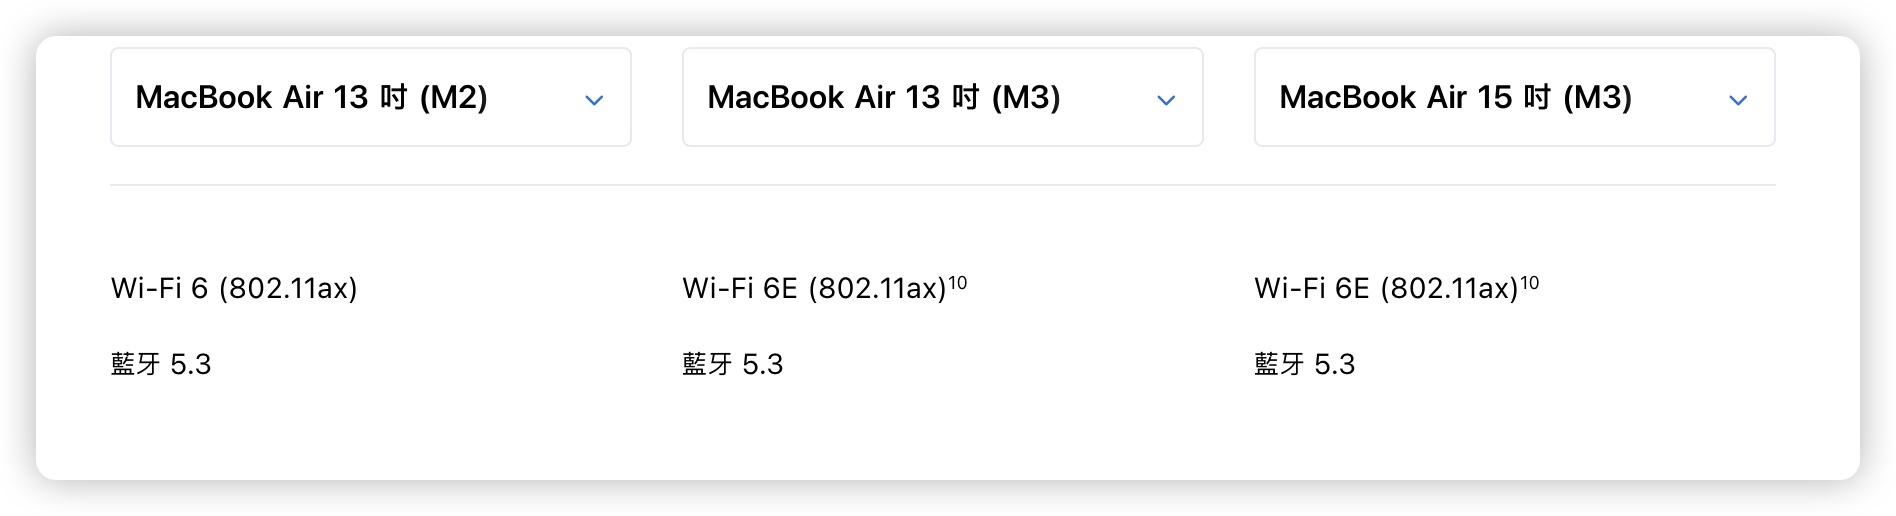 MacBook Air M3 M2 比較 差異